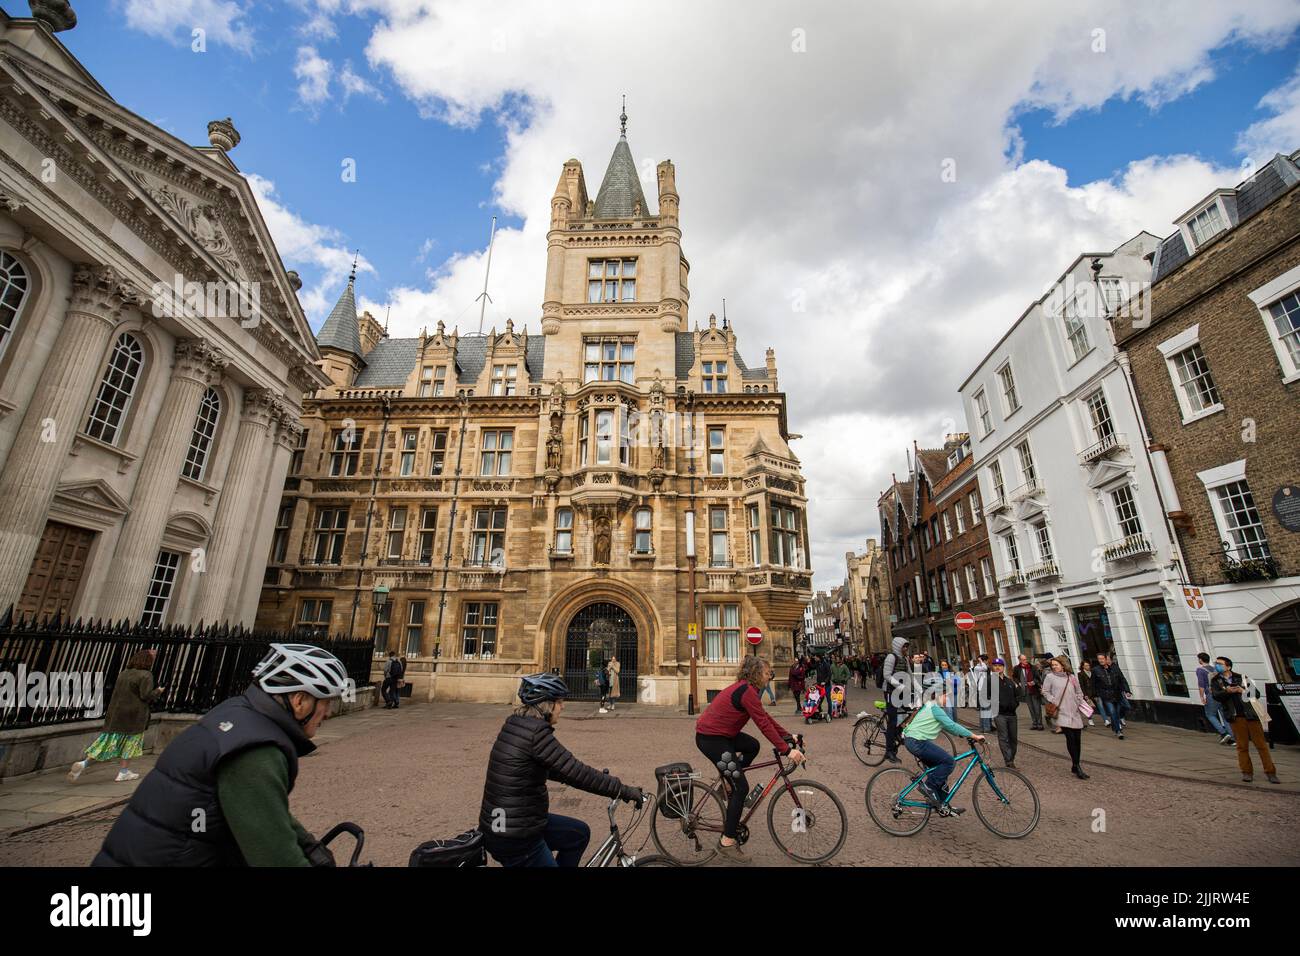 Una vista dei ciclisti che cavalcano su una strada incantevole nel centro di Cambridge, Regno Unito Foto Stock